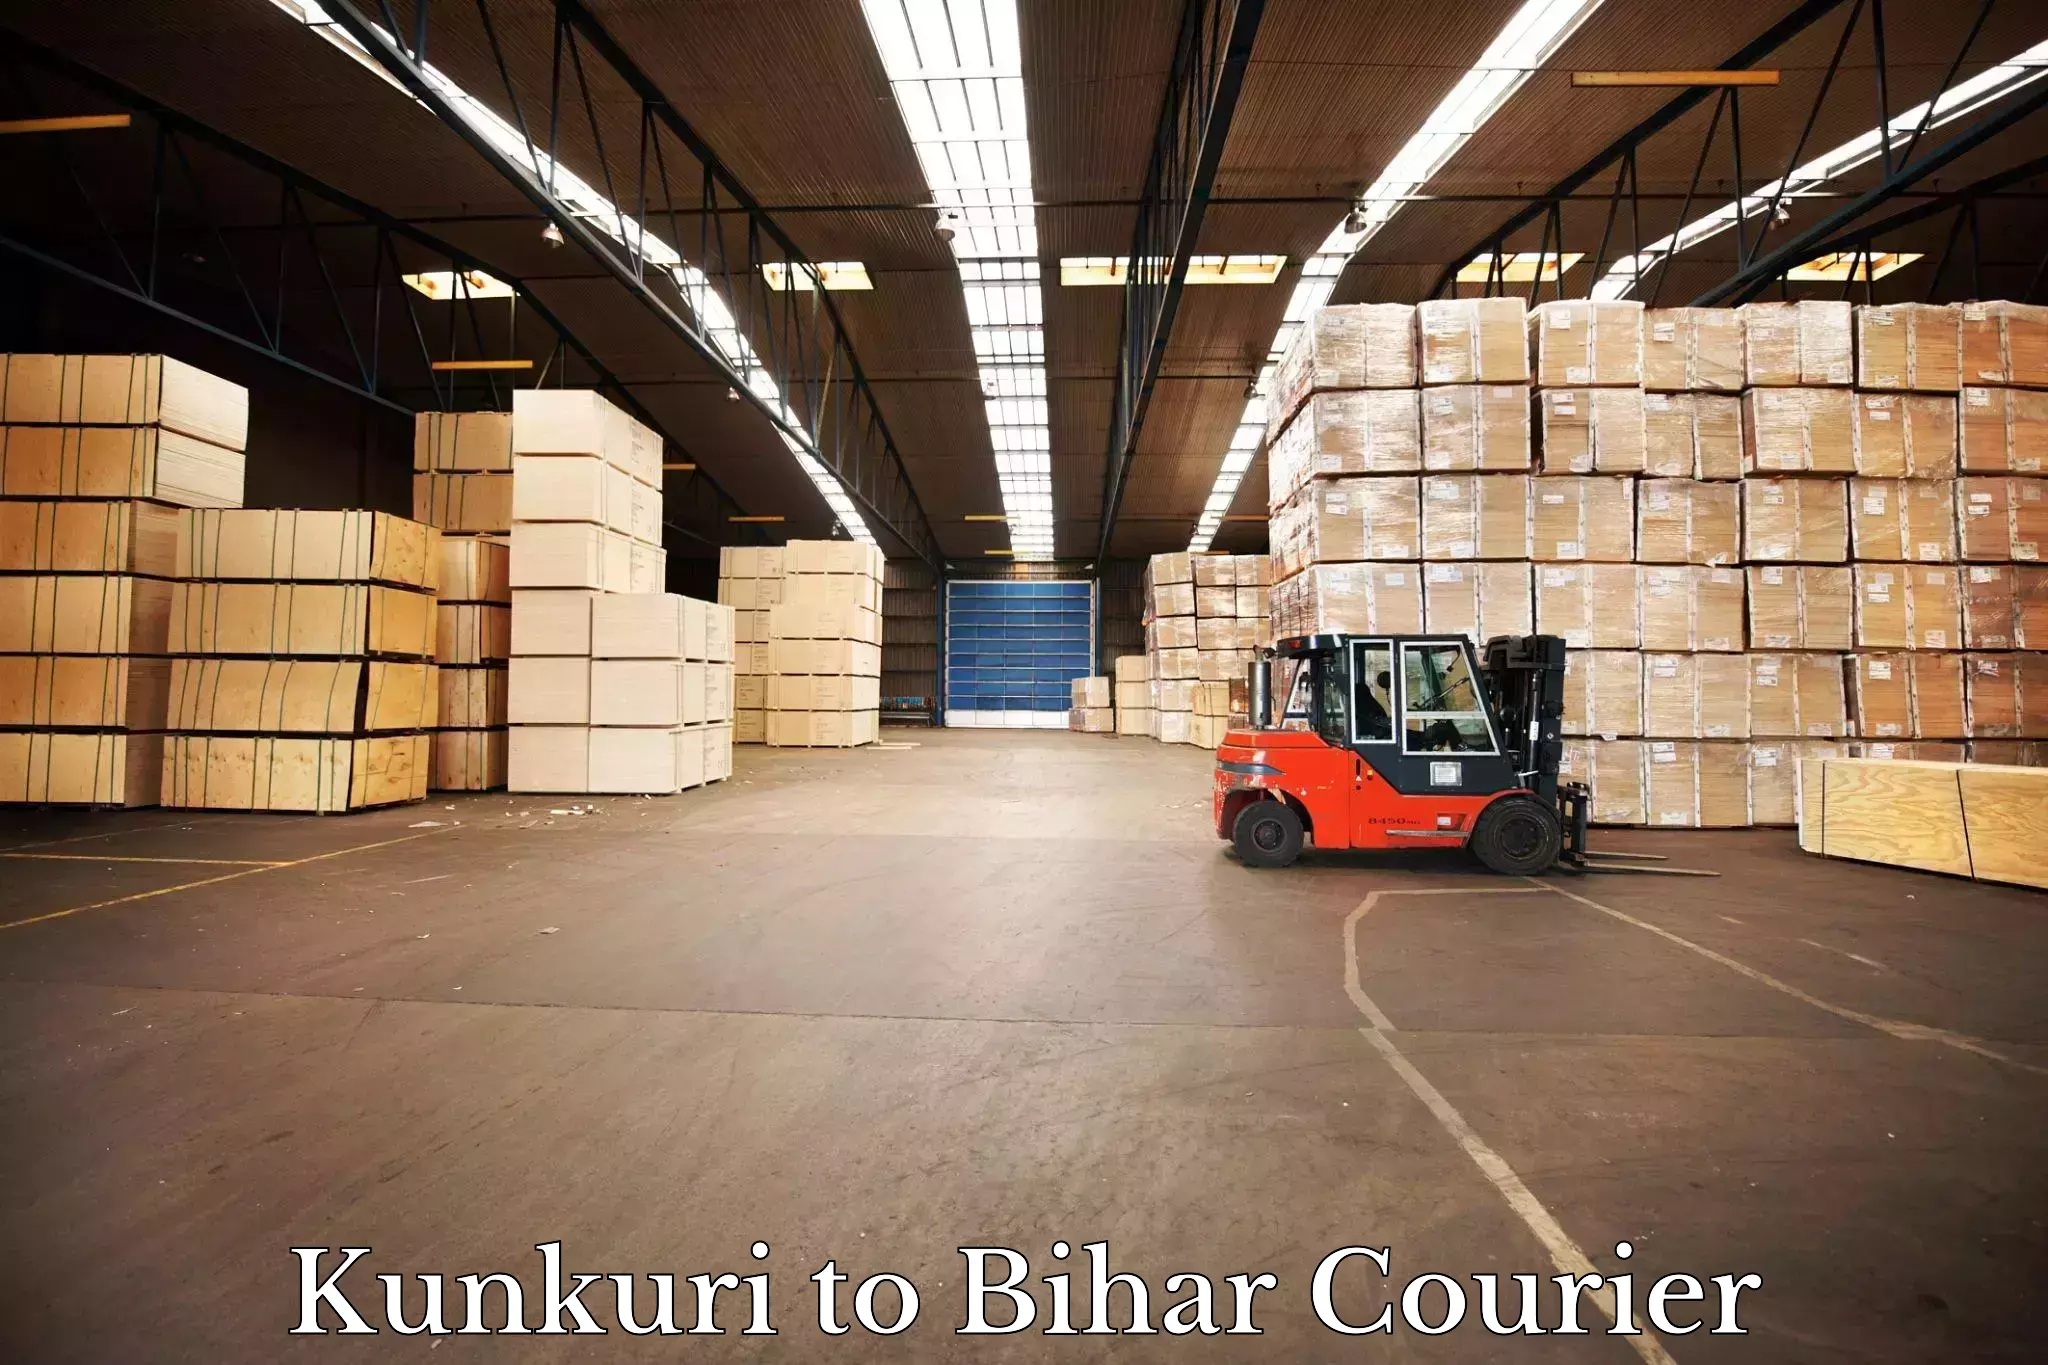 24/7 courier service Kunkuri to Sheikhpura